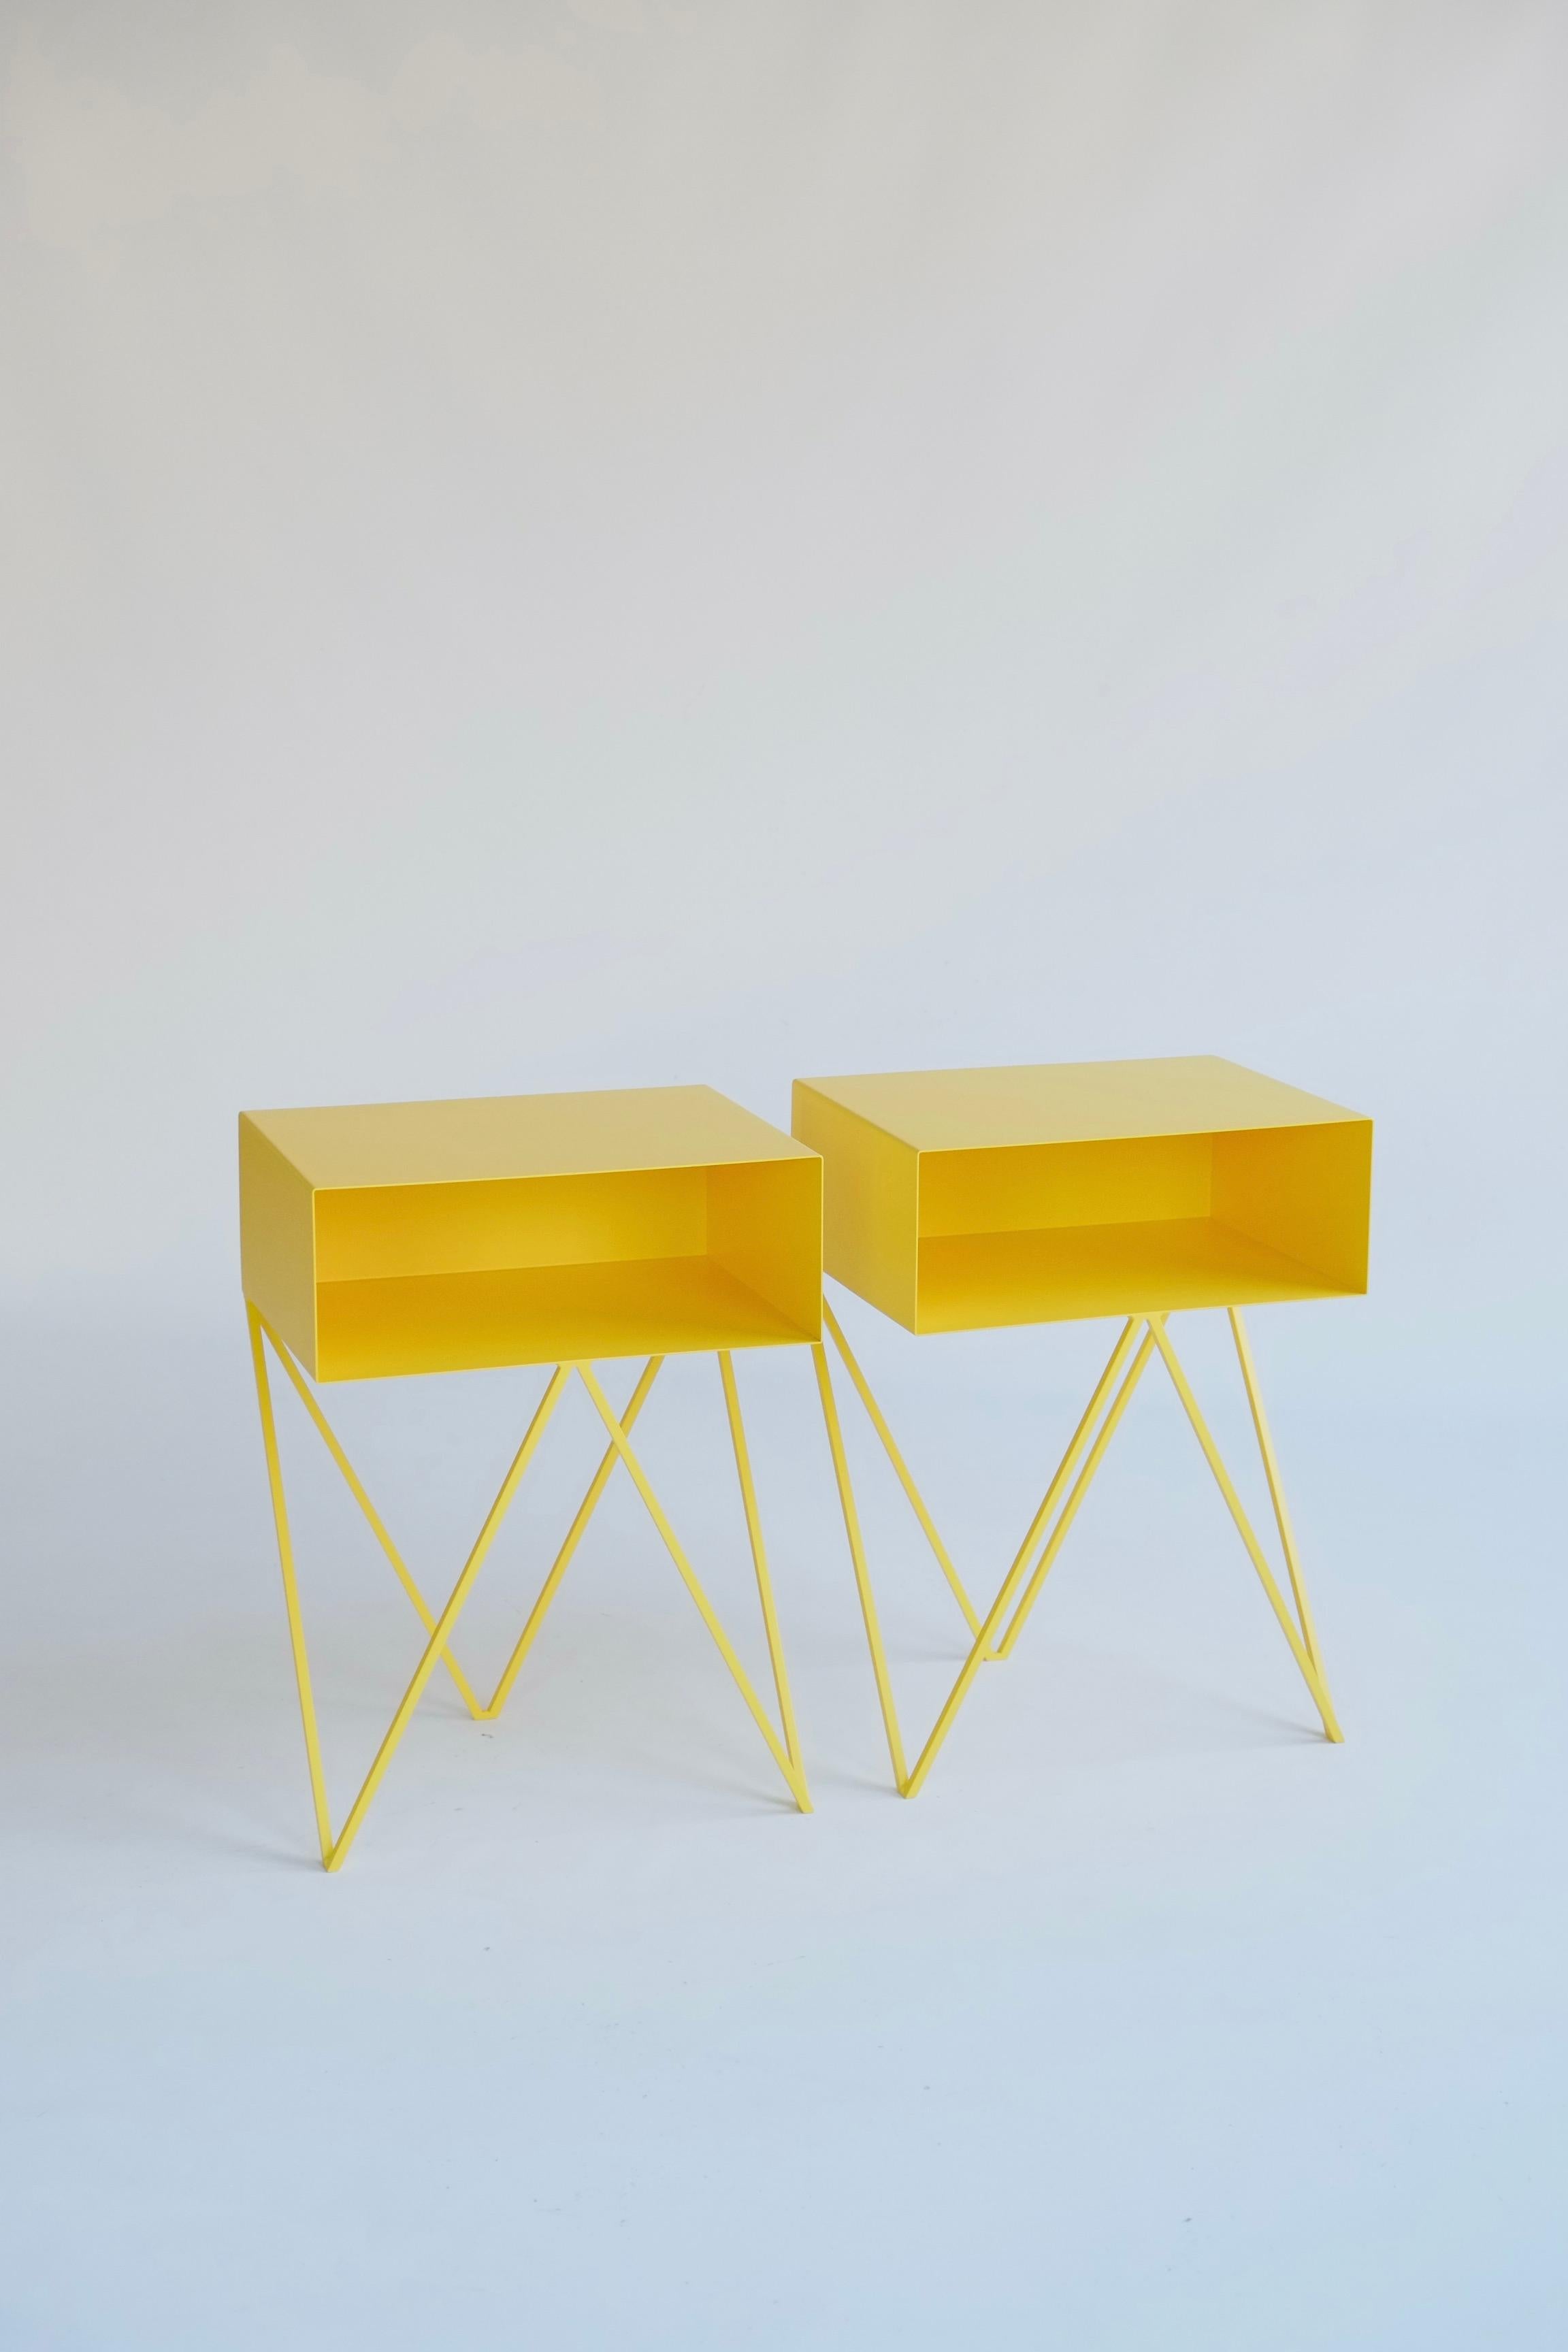 Une belle paire de tables de chevet en Robot jaune. La table d'appoint Robot comporte une étagère ouverte sur des pieds en zig-zag. Un design amusant et fonctionnel en acier massif, recouvert d'un revêtement en poudre de couleur jaune. Les lignes